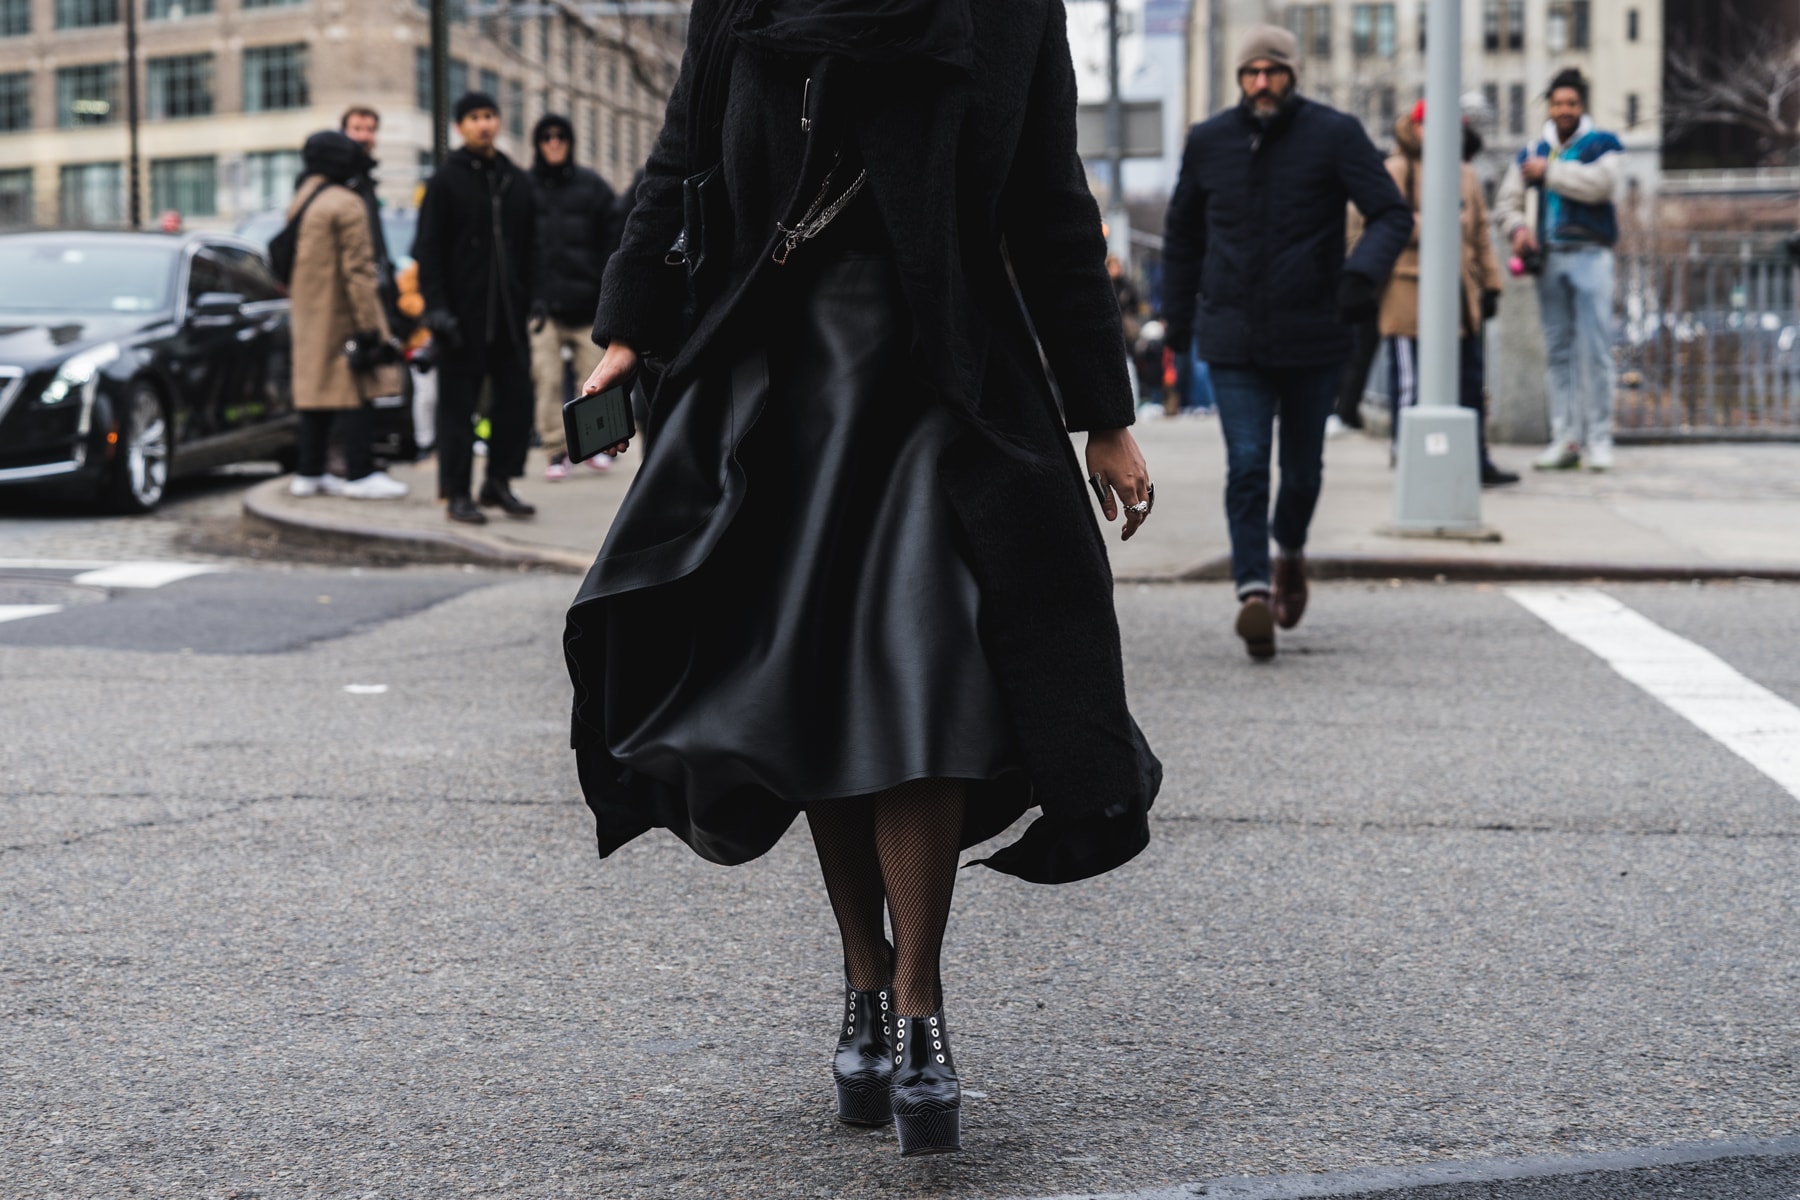 New York Fashion Week Part 1 Street Style Snaps Fashion Outfits NYFW 2018 Louis Vuitton Balenciaga Fendi Gucci Celine